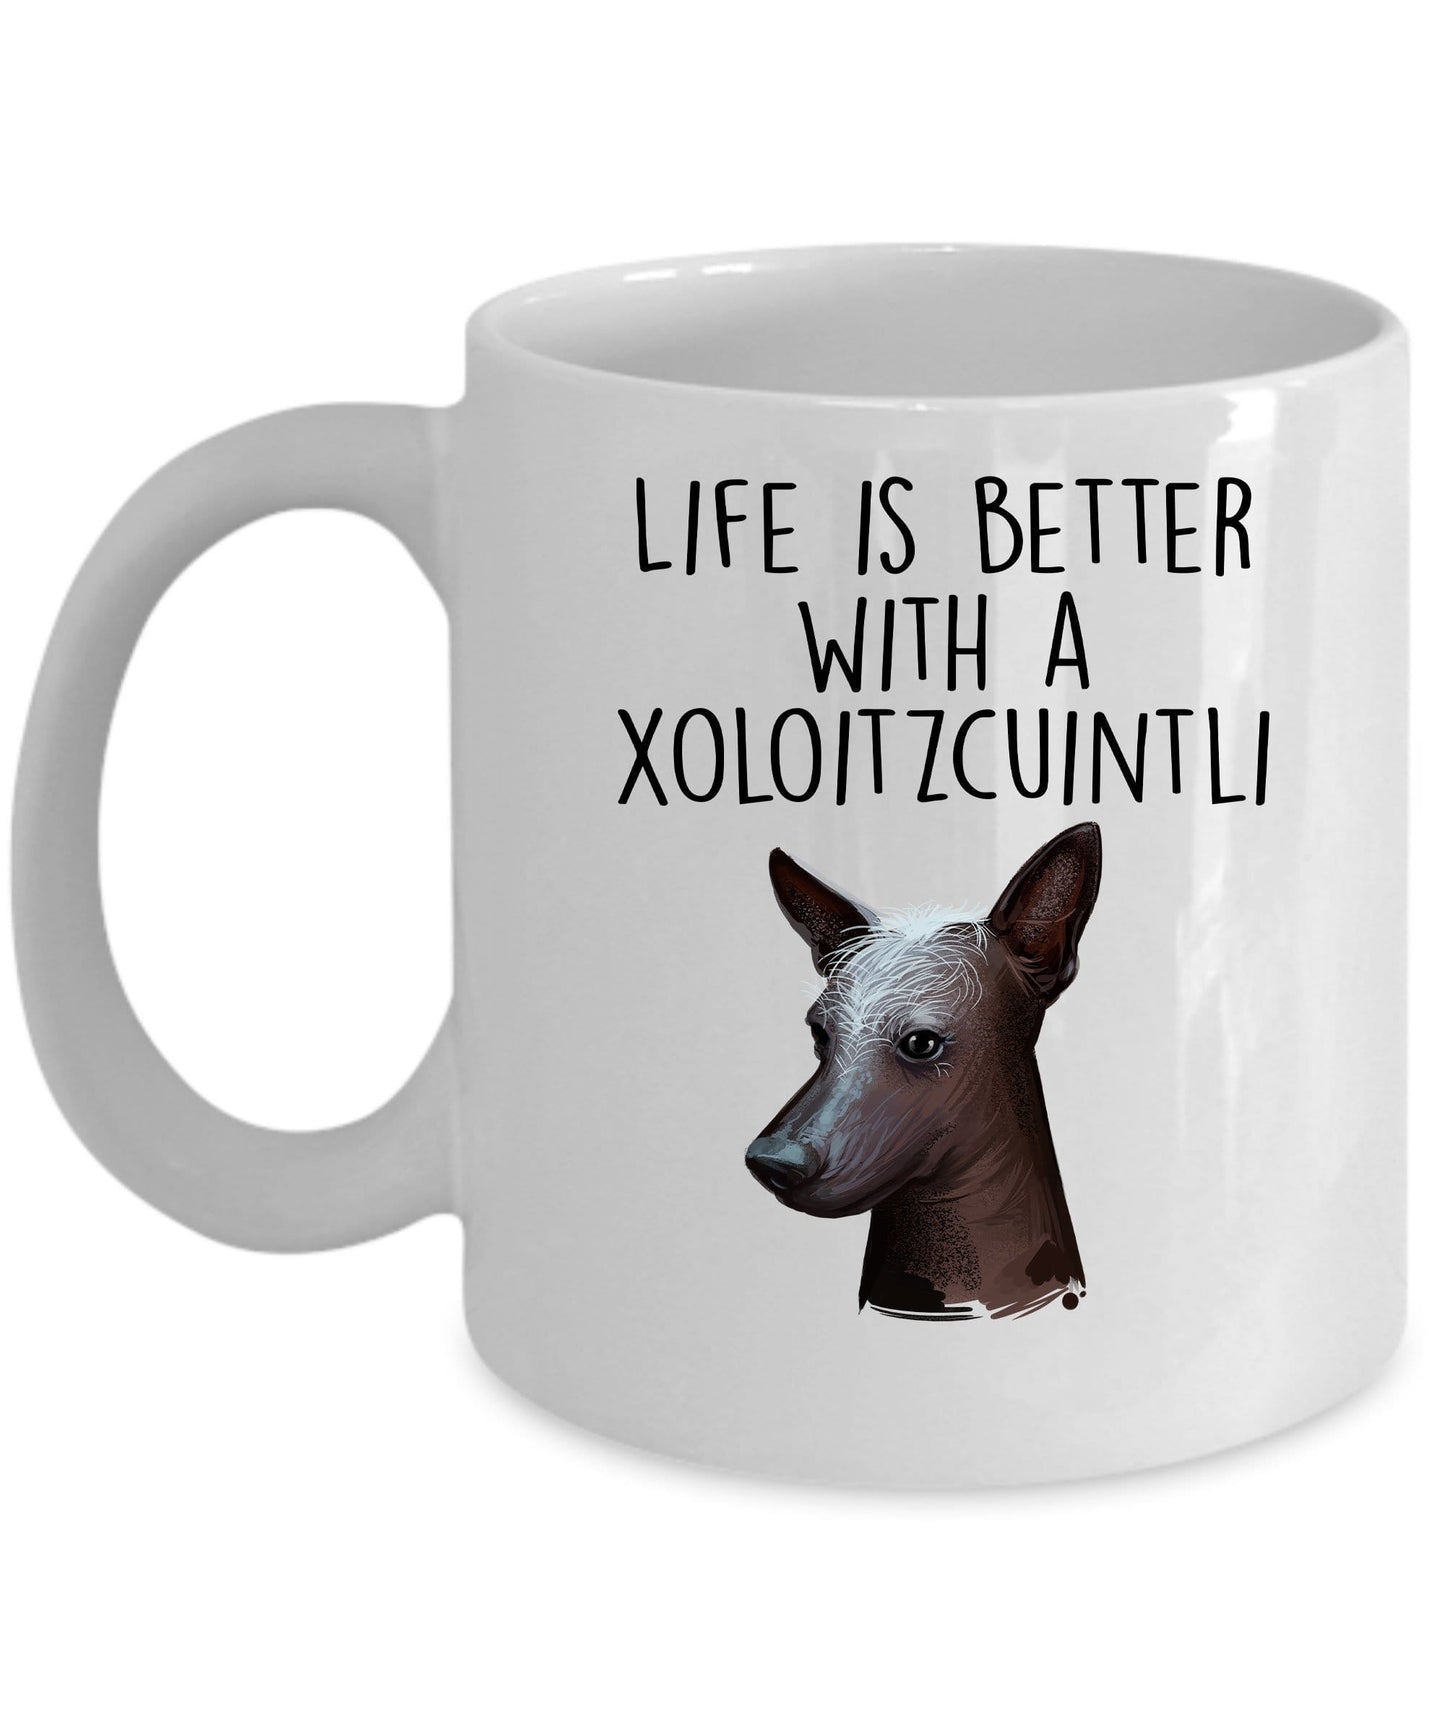 Xoloitzcuintli Dog Coffee Mug - Life is Better